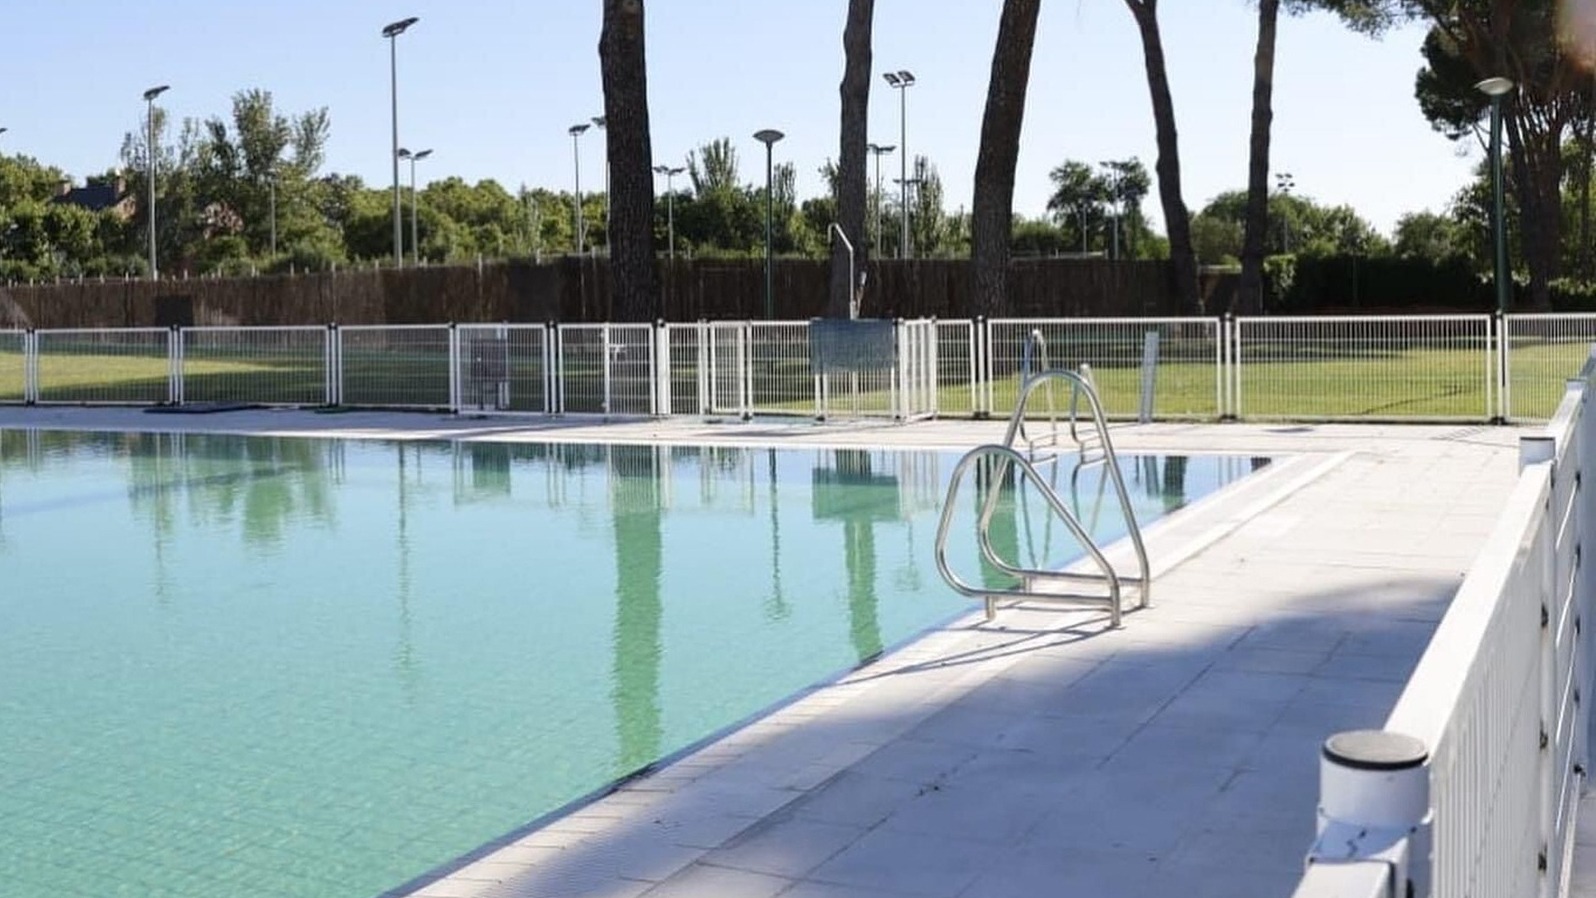 La piscina de verano del Carlos Ruiz abre sus puertas hasta el 5 de septiembre